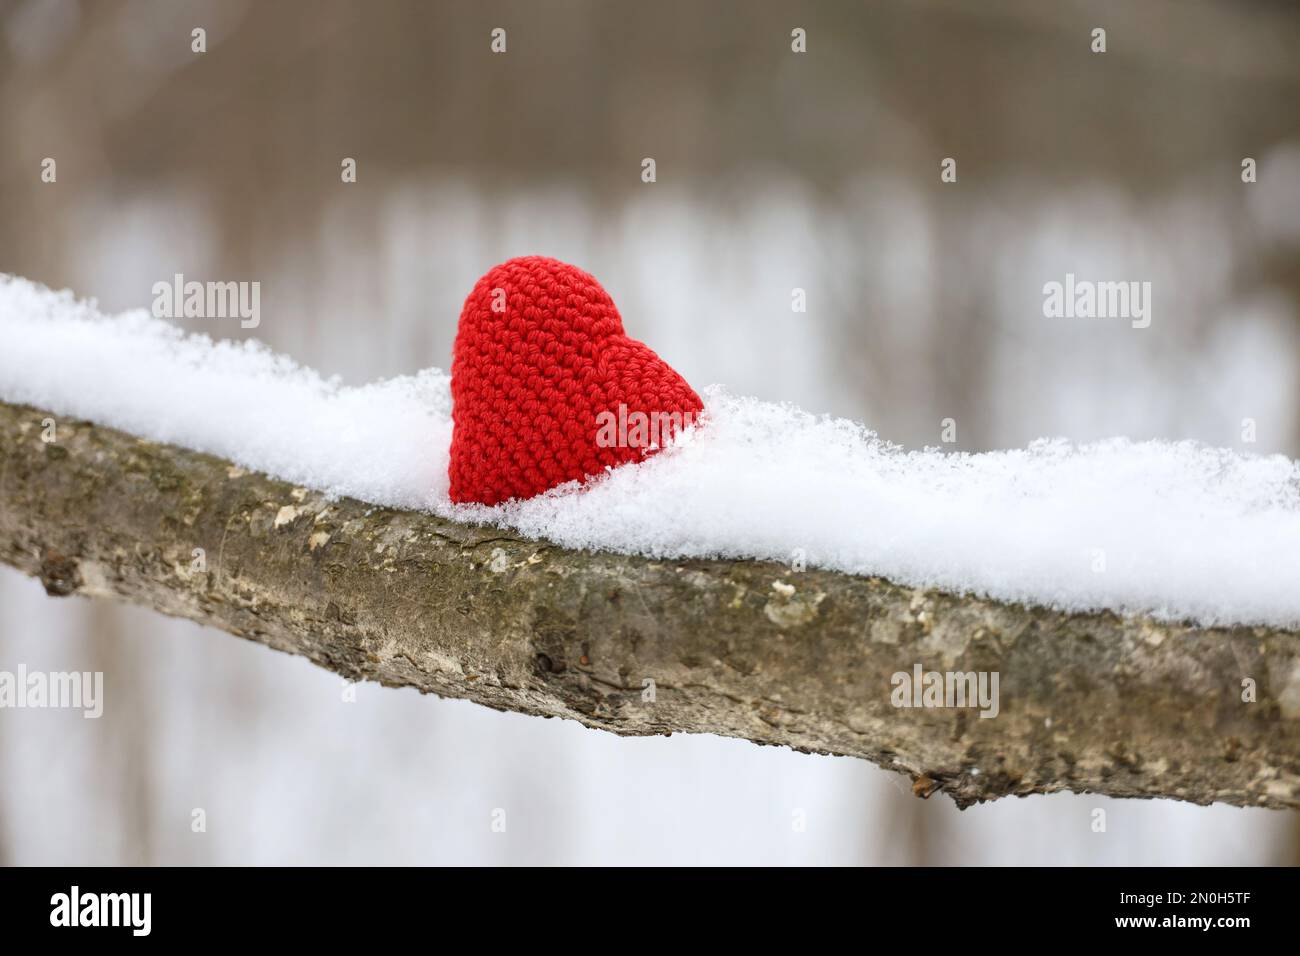 Valentinsherz auf einem mit Schnee bedeckten Ast im Winterwald. Rotes Stricksymbol der Liebe, Konzept der Neujahrsfeier oder Valentinstag Stockfoto